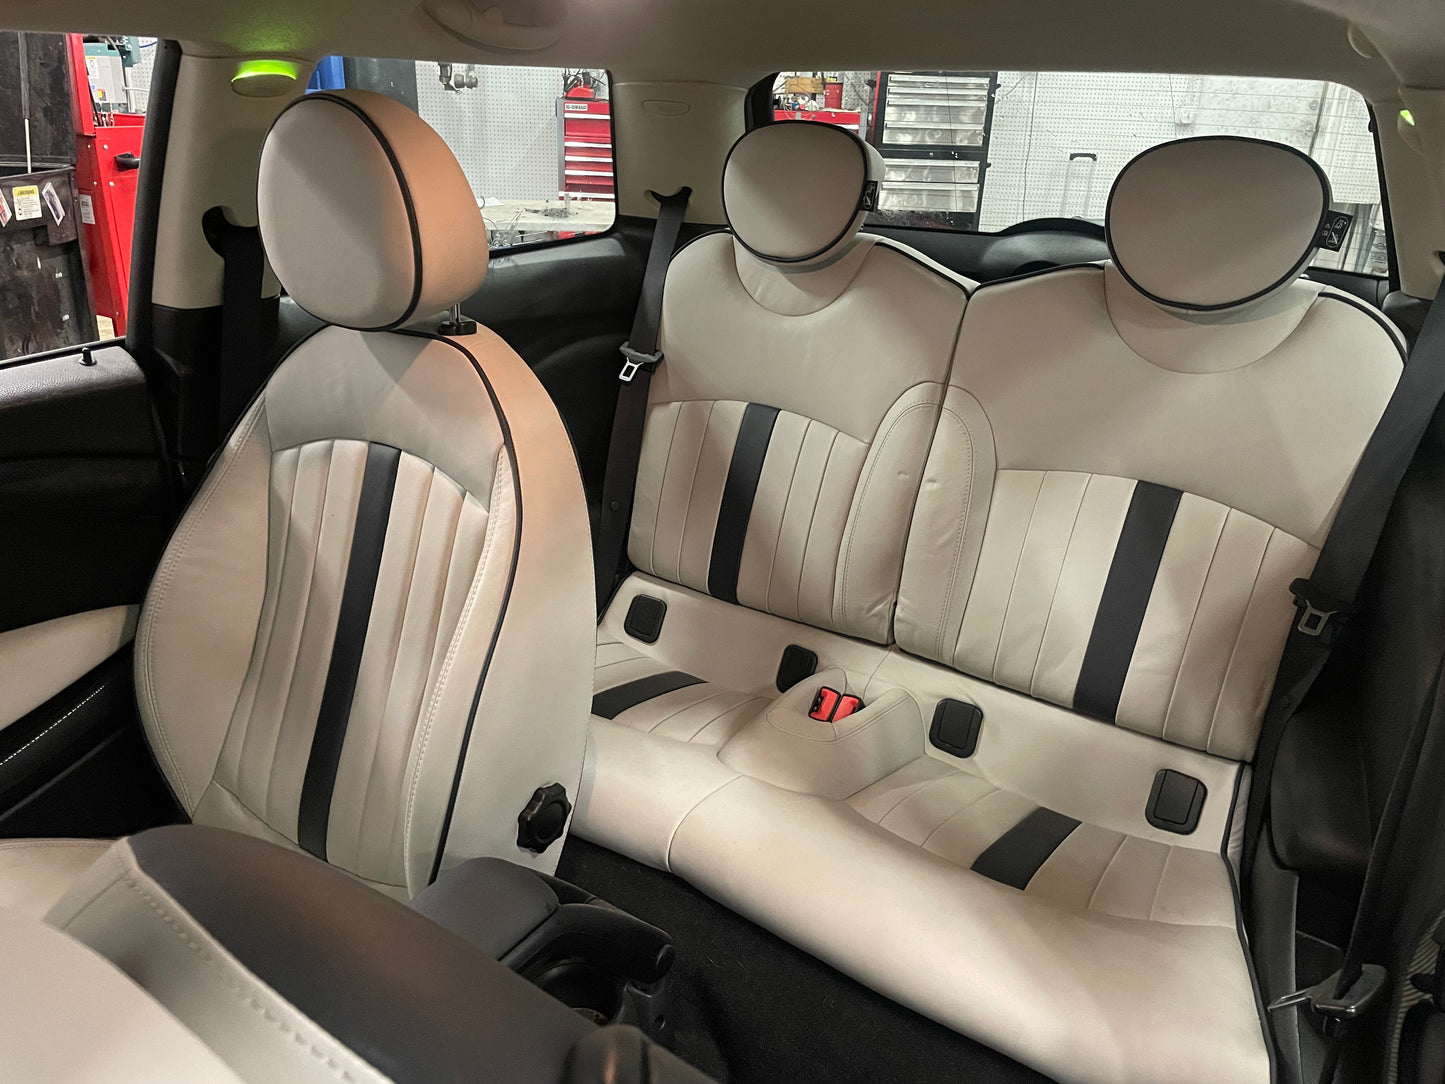 2013 MINI Cooper S, New Parts Car (July 2022) Stk #313